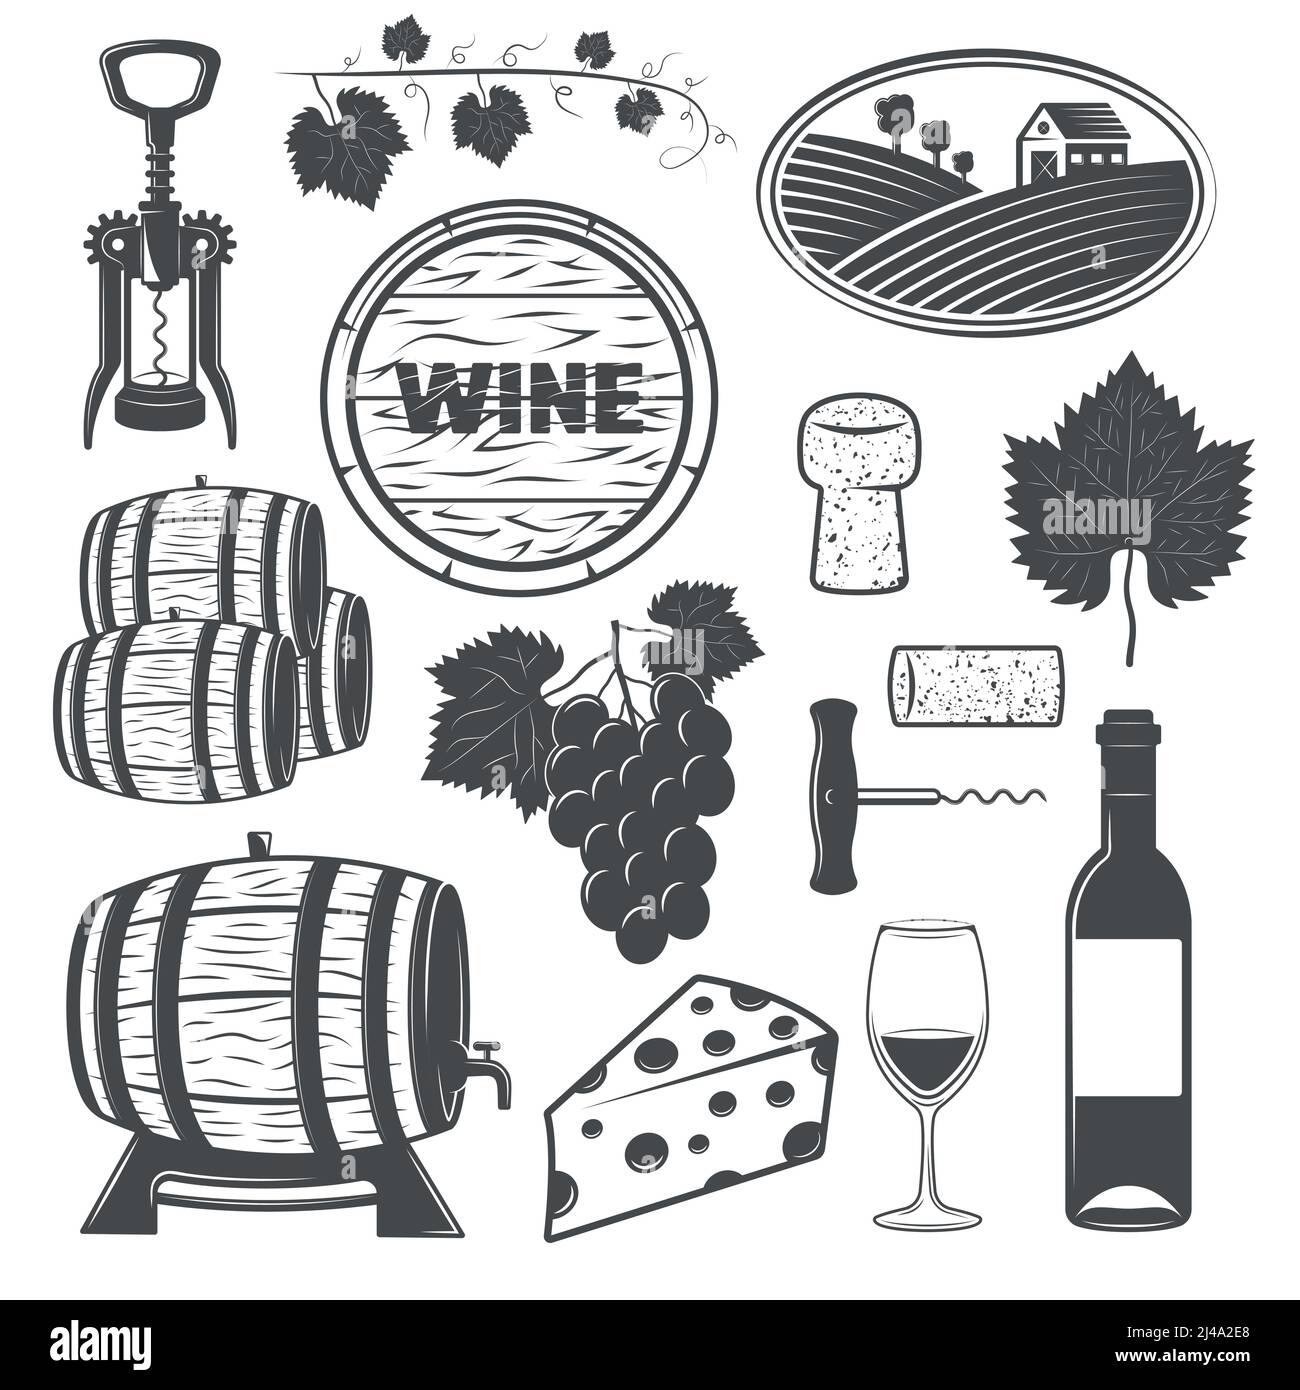 Ensemble d'objets monochromes de vin avec des fûts de bois de vigne de illustration vectorielle isolée de corkviss de fromage de raisin Illustration de Vecteur